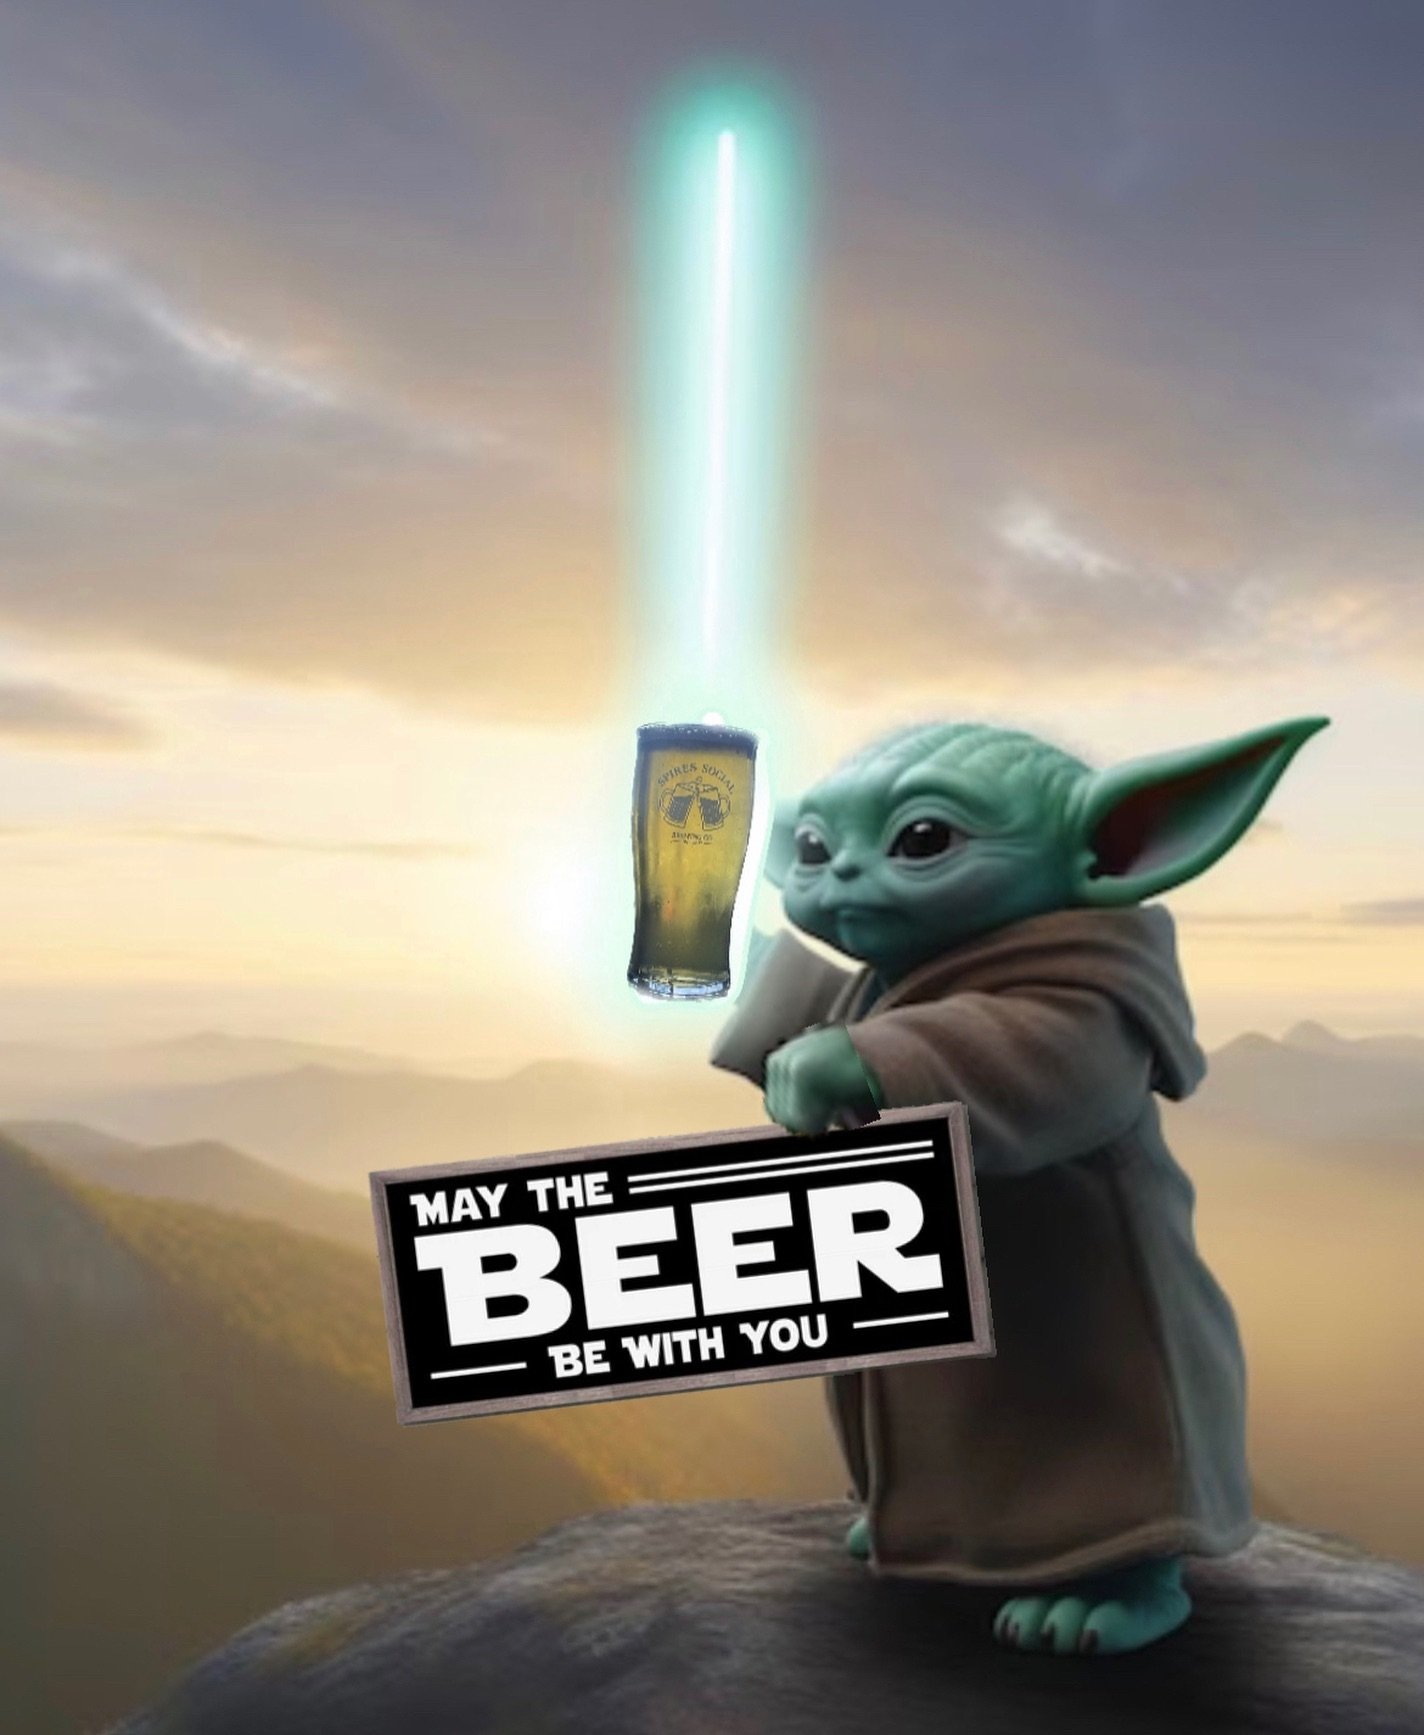 Drink beer, you must! 🤪
&bull;
&bull;
&bull;
#maythebeerbewithyou #mayfourth #starwarsday #beerinspires #beer #untappd #beerstagrammers #ohiocraftbeer